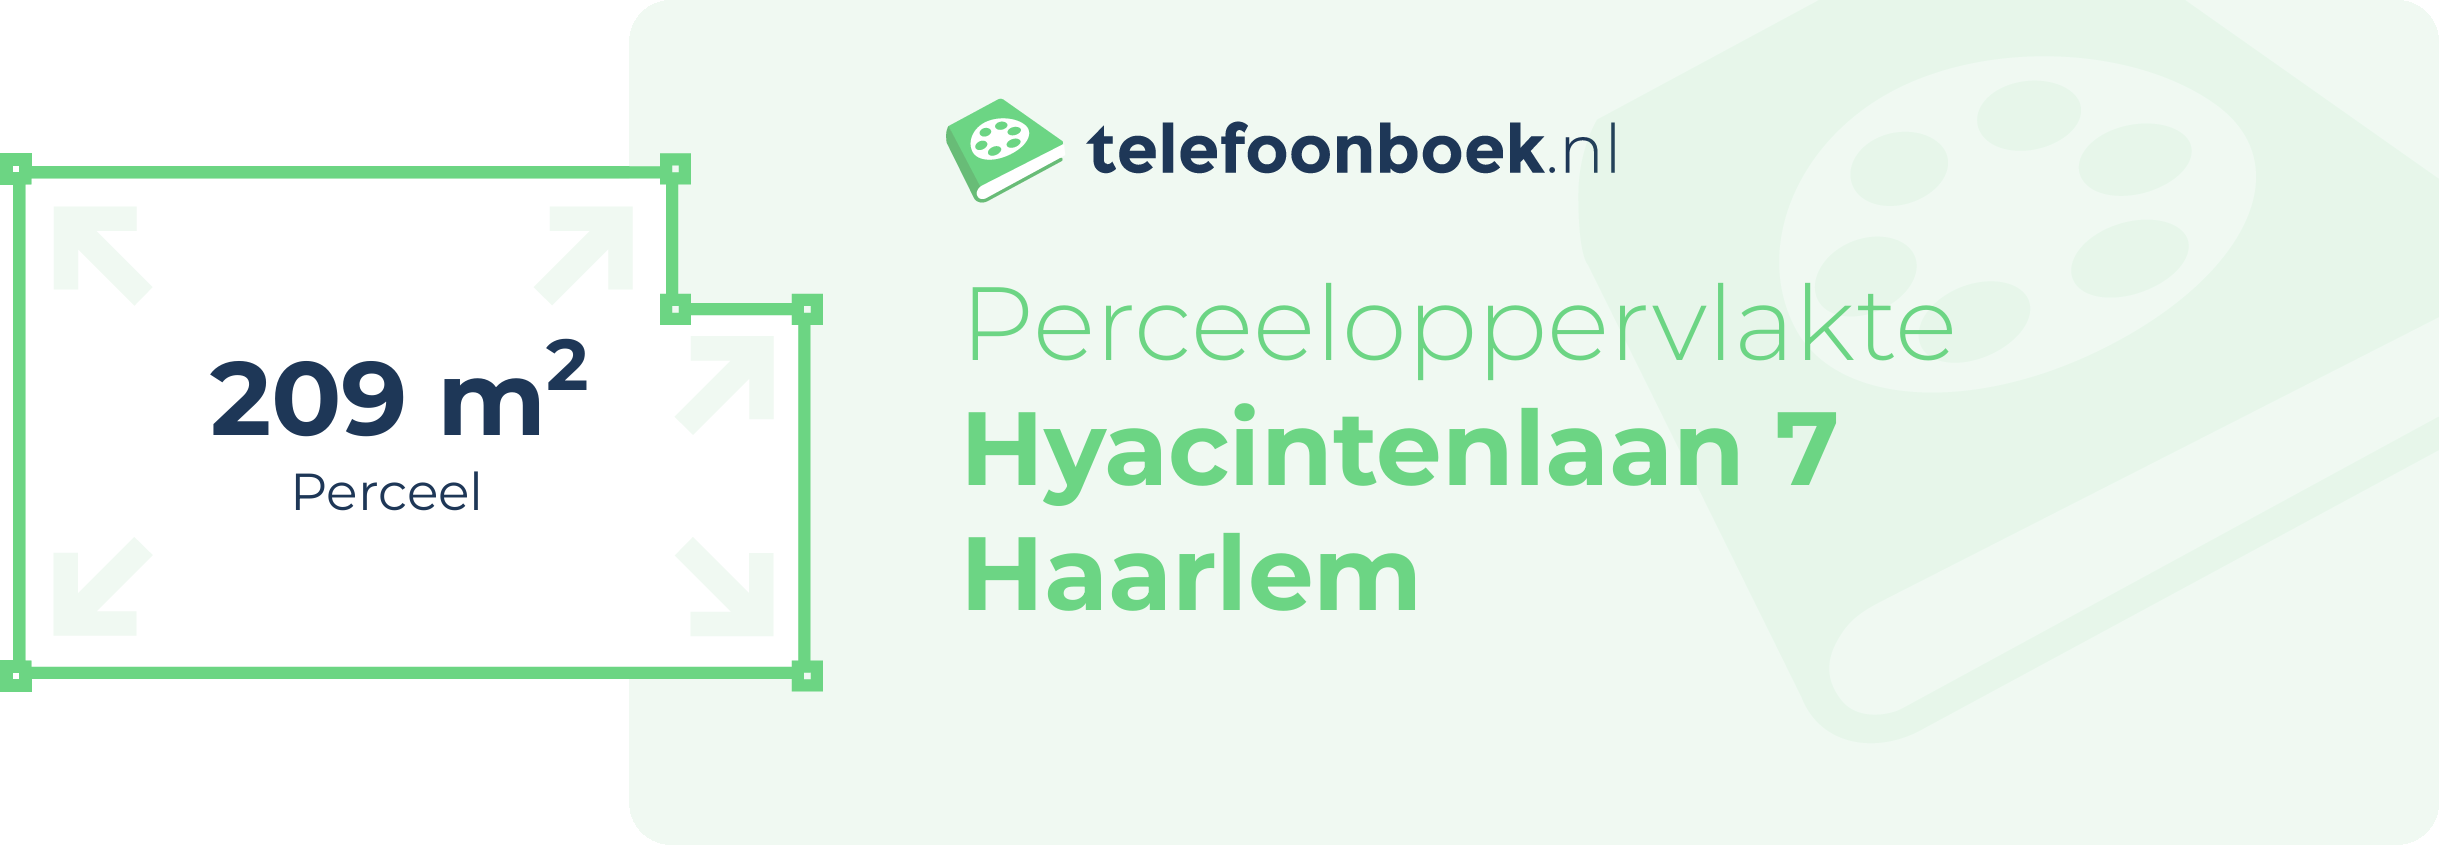 Perceeloppervlakte Hyacintenlaan 7 Haarlem